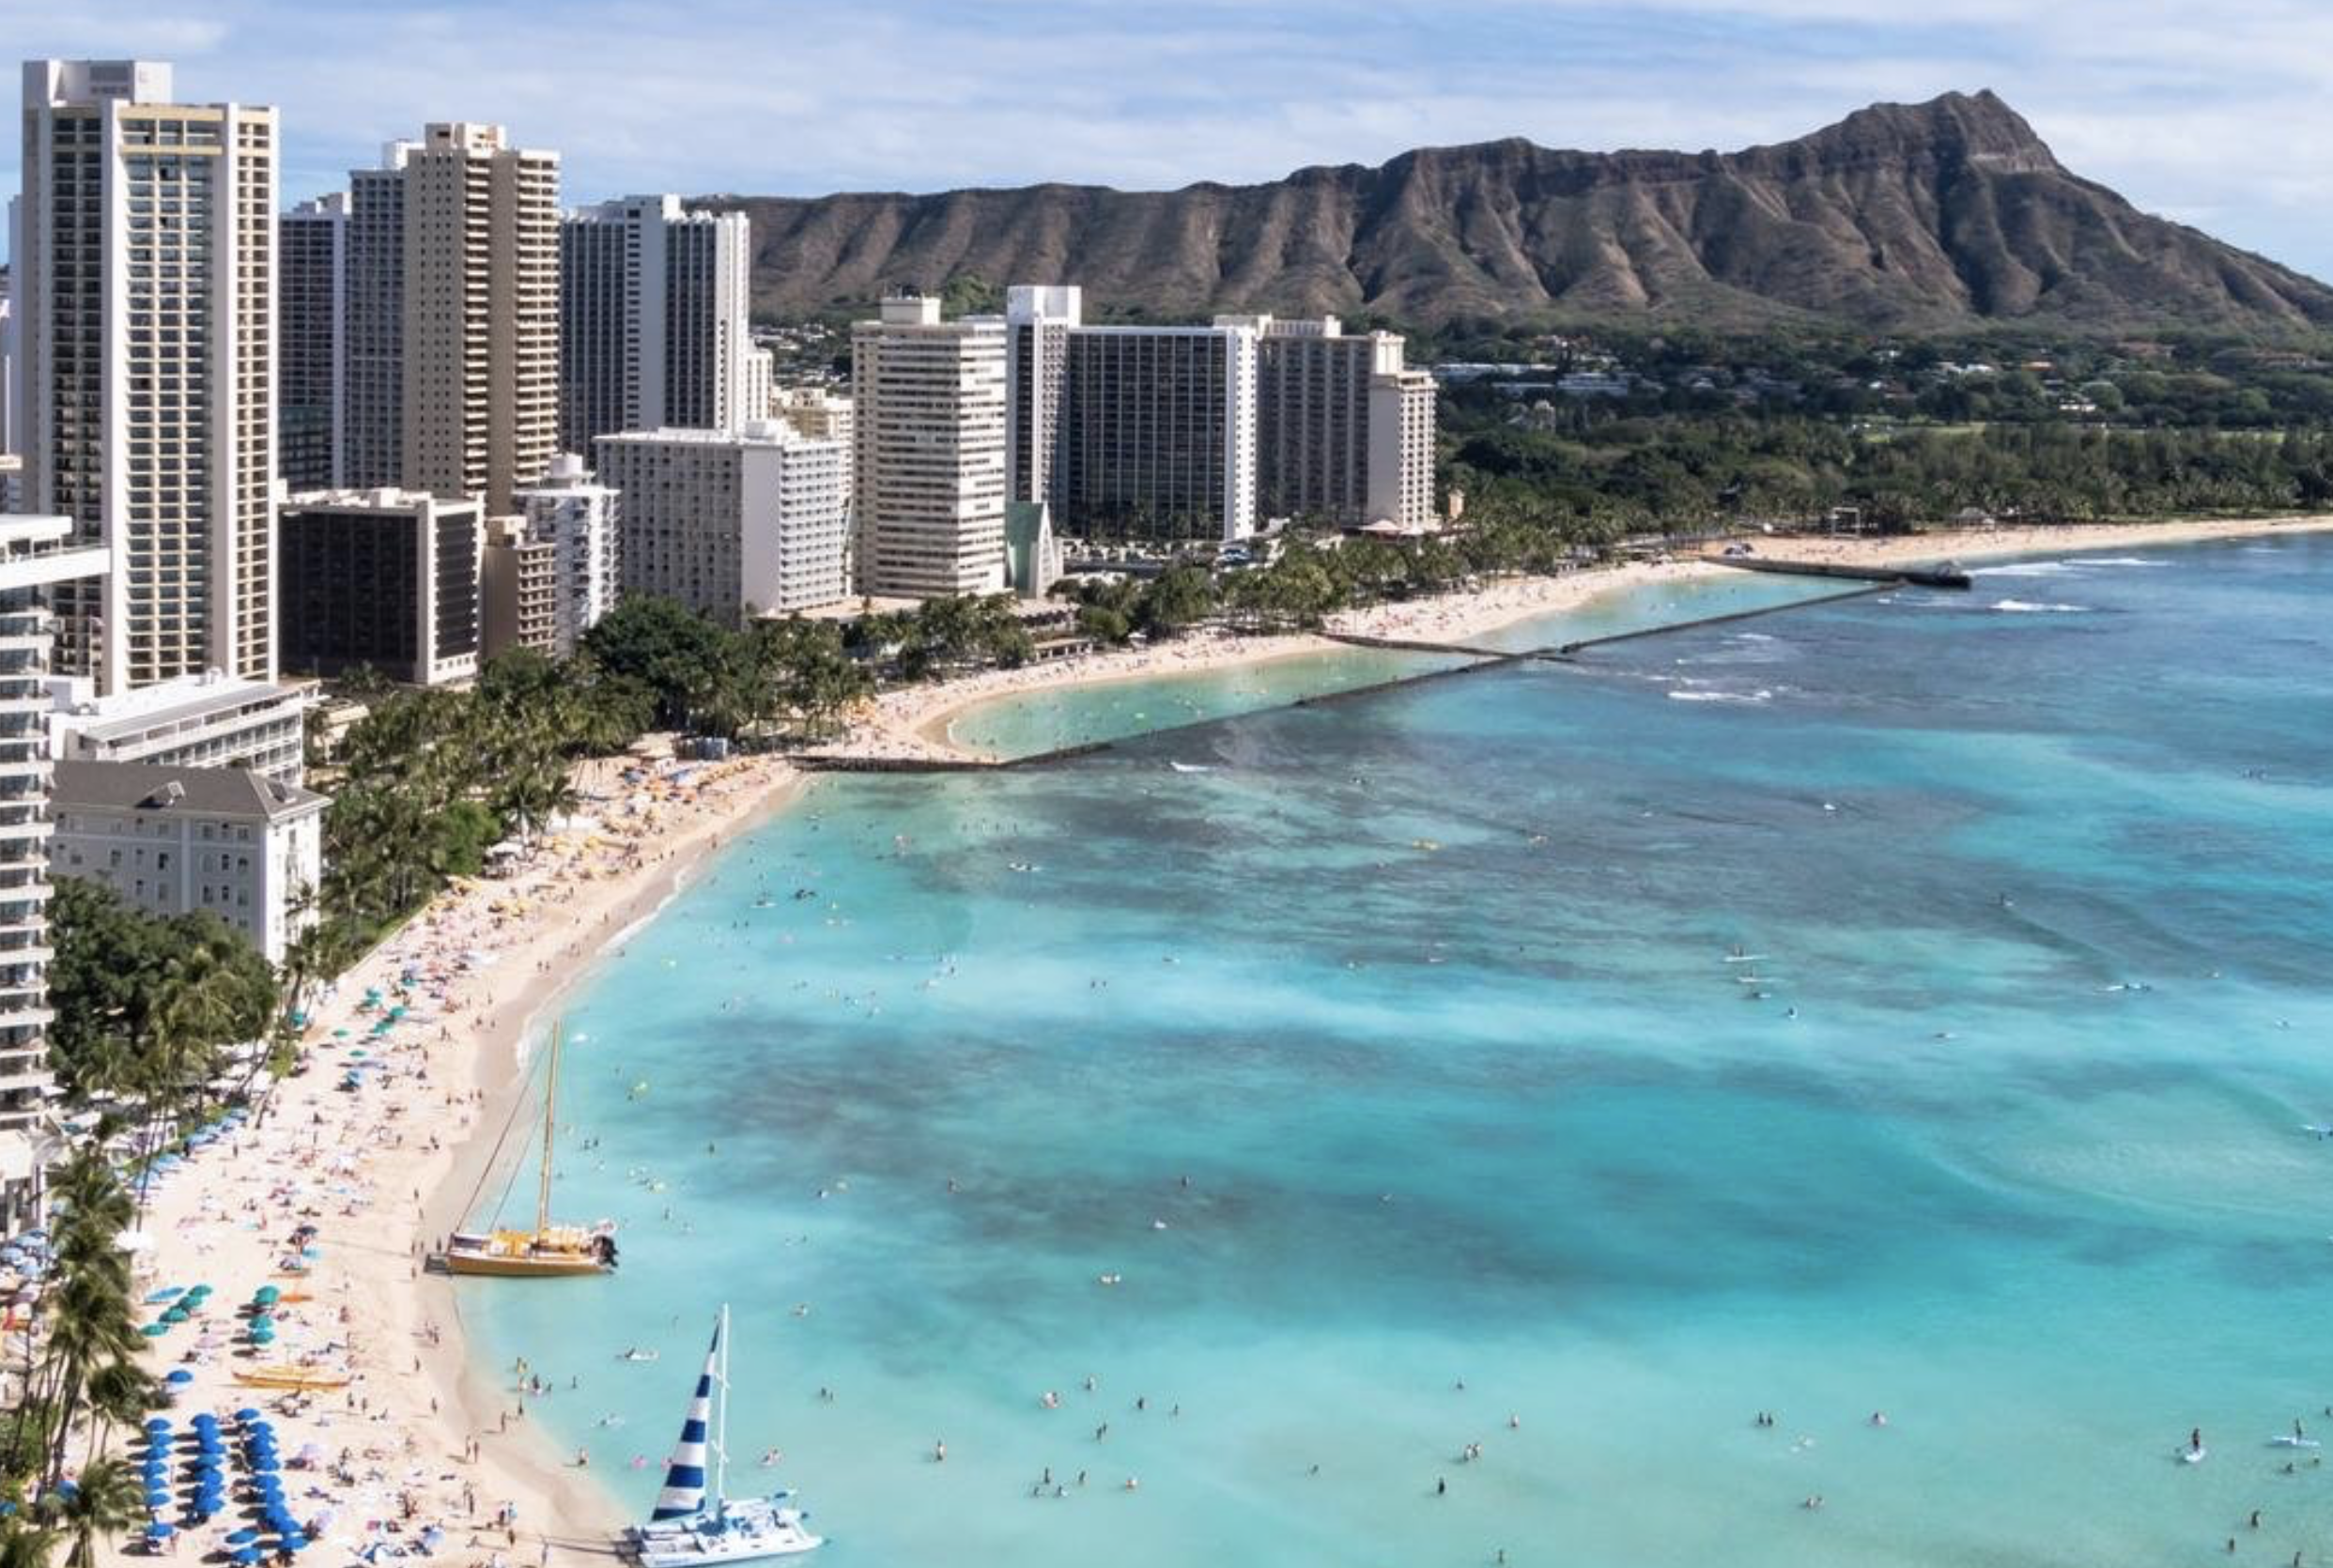 4 benefits of cruising around Hawaii with Norwegian’s Pride of America - Hawaii Cruise